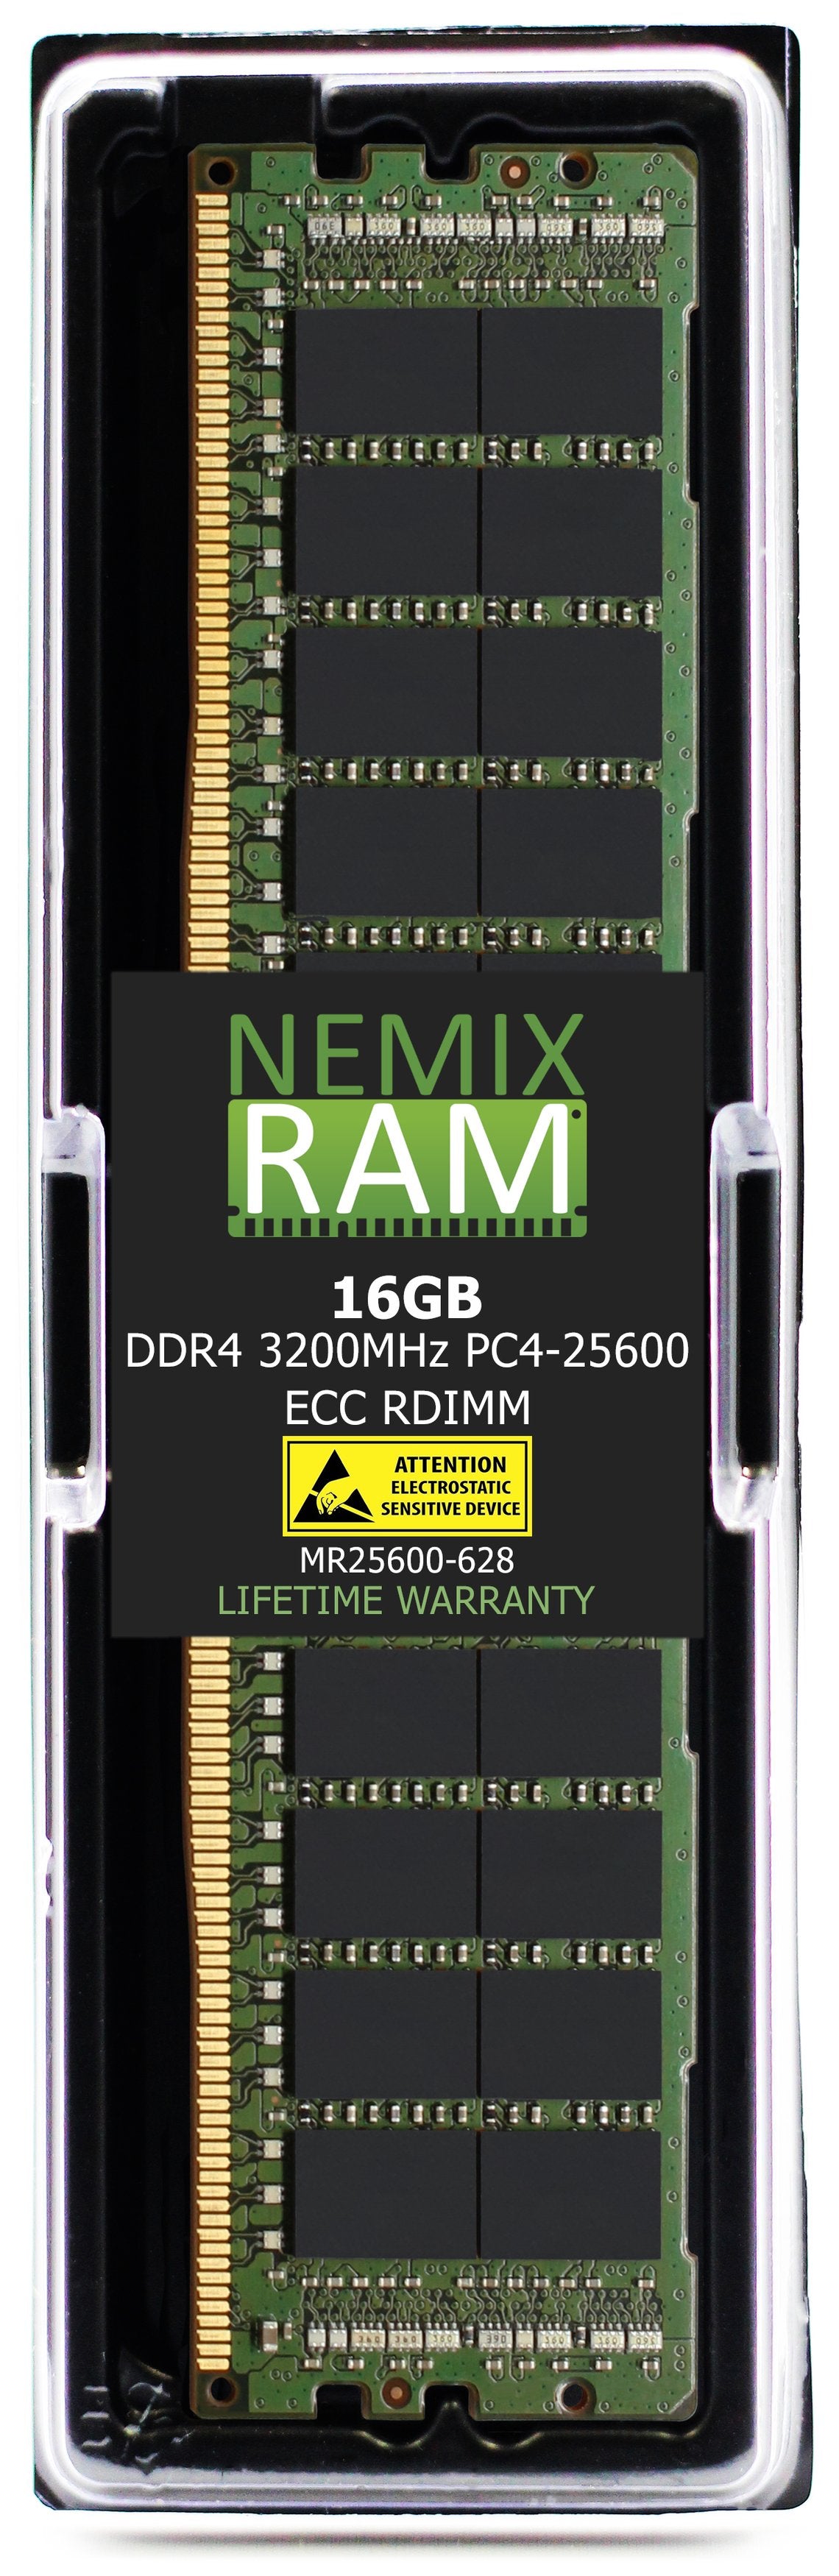 16GB DDR4 3200MHZ PC4-25600 RDIMM Compatible with Supermicro MEM-DR416L-CL02-ER32